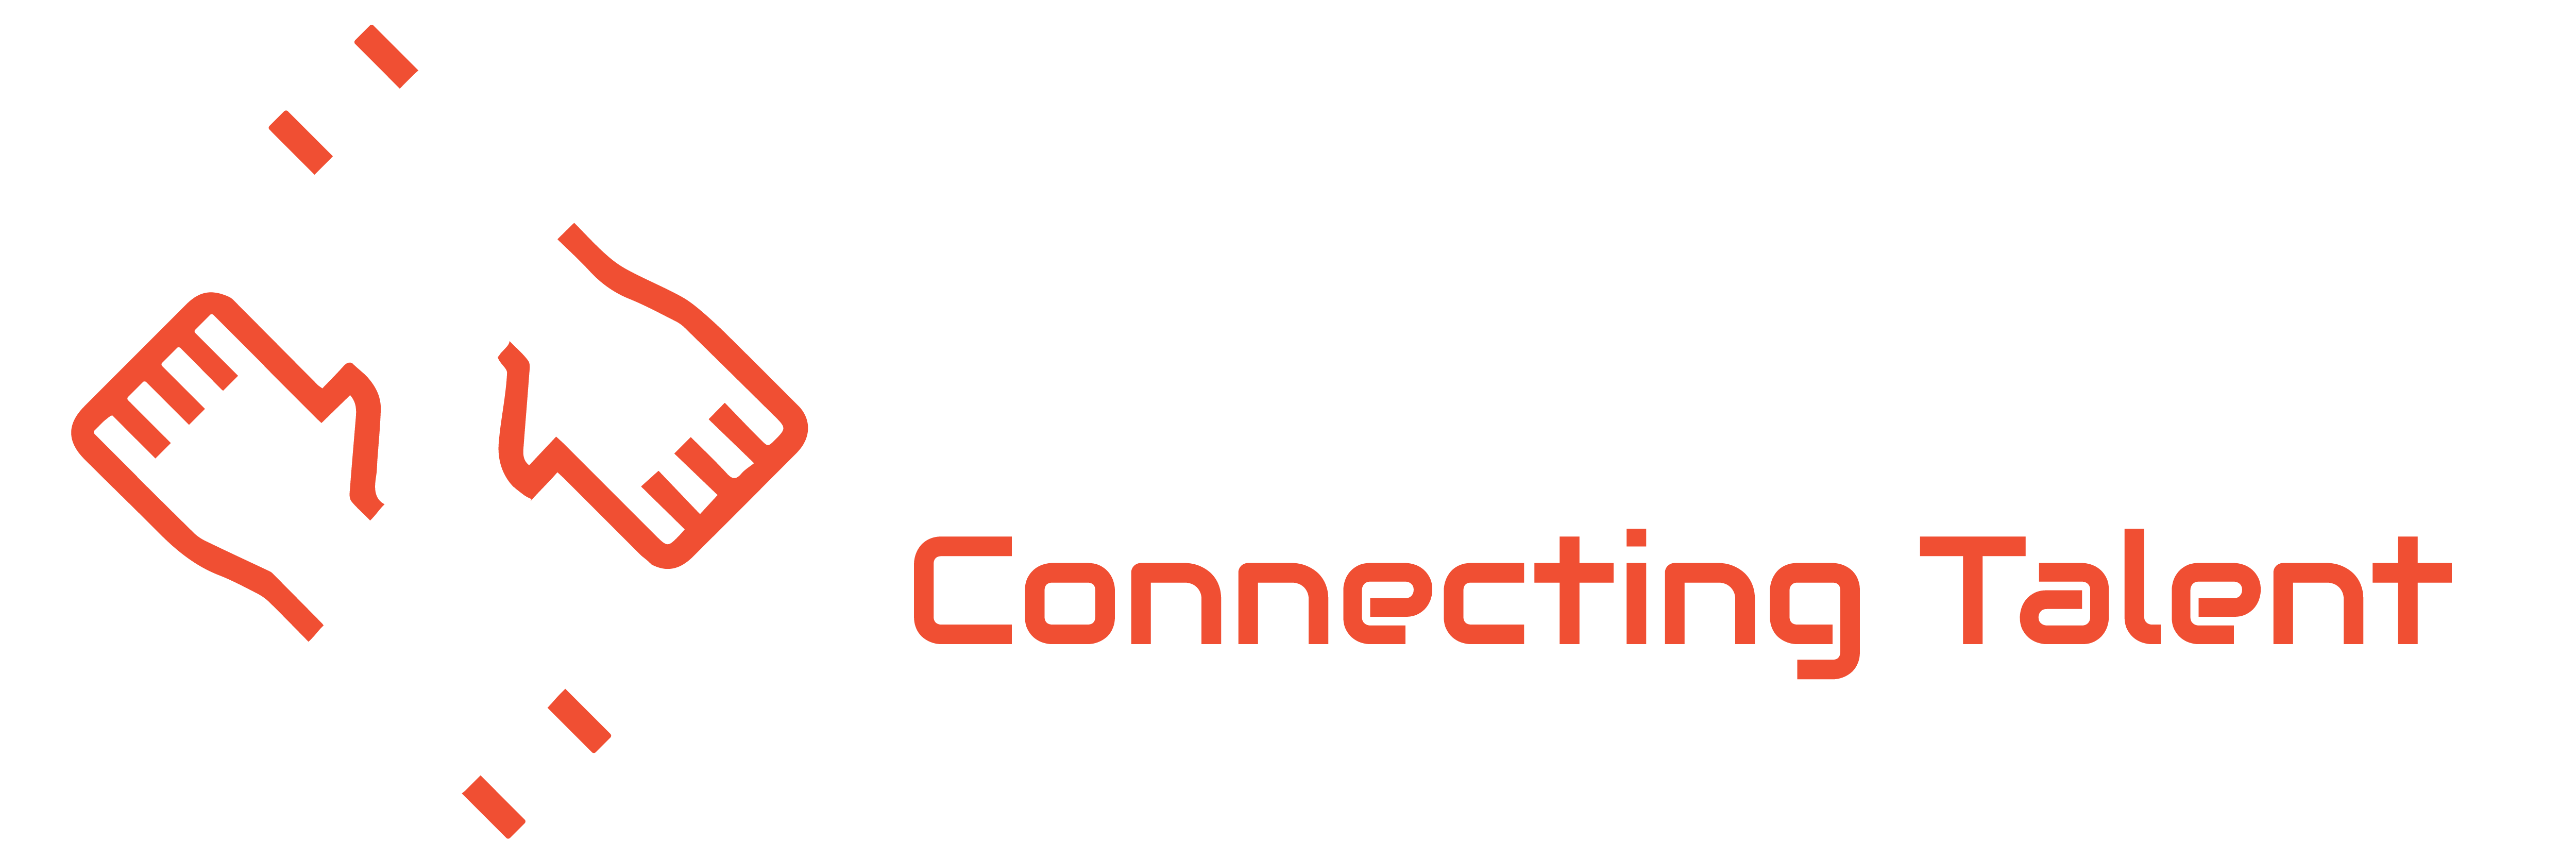 Emonics Logo